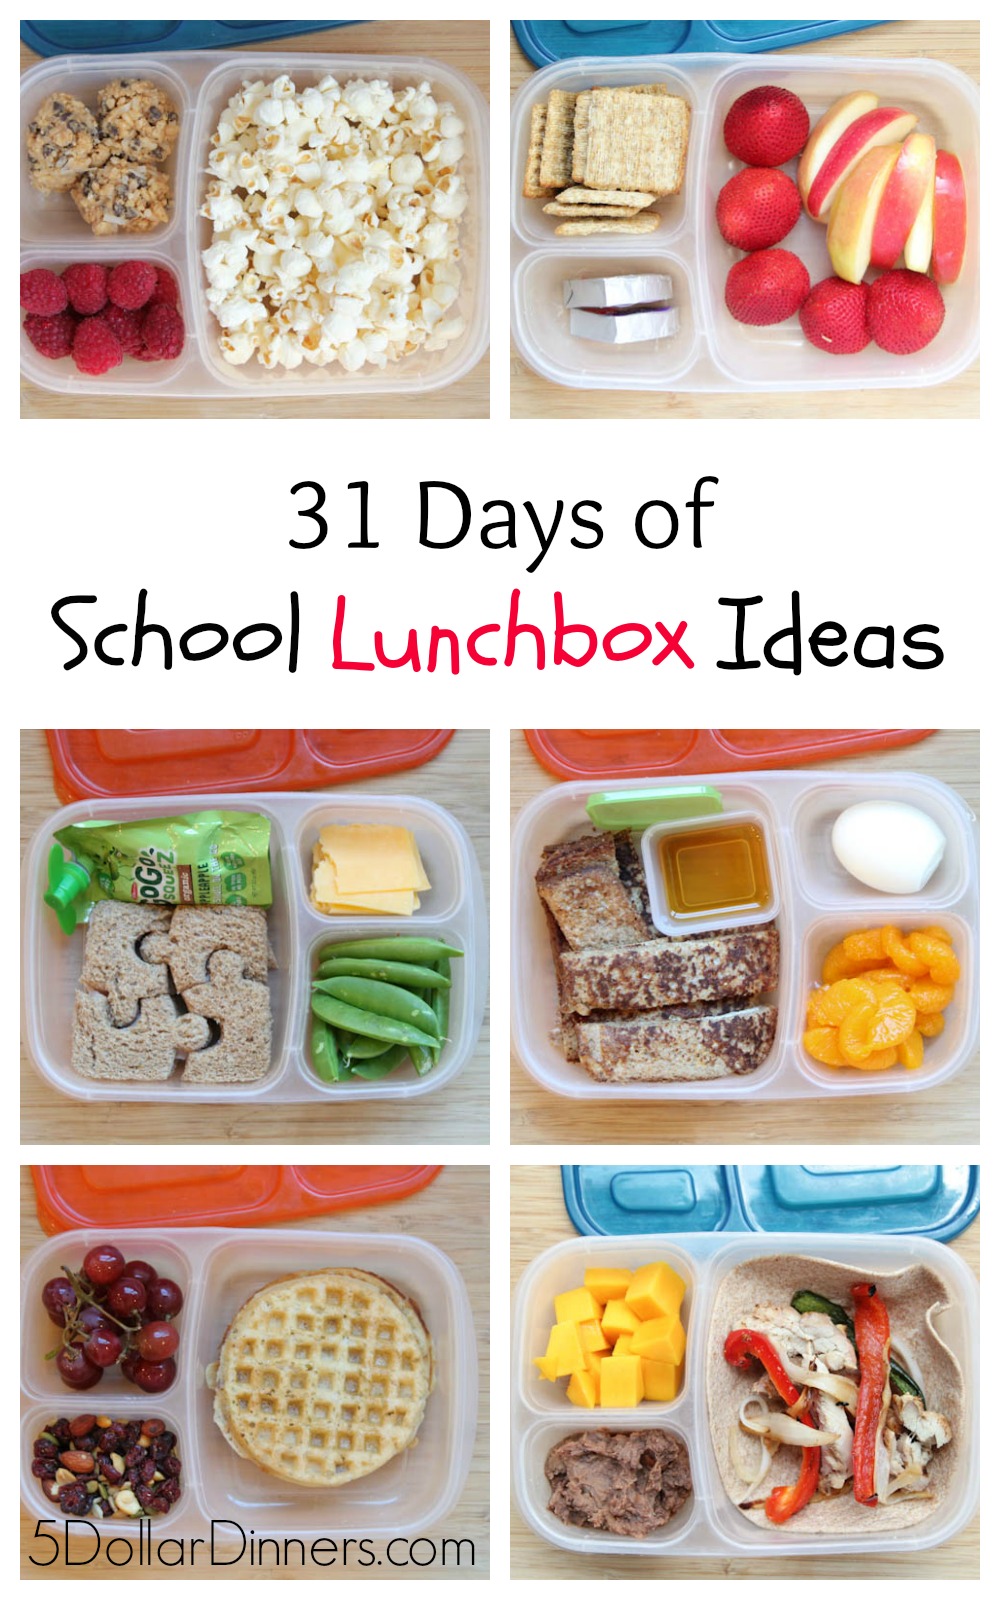 31-Days-of-School-Lunchbox-Ideas-sq.jpg